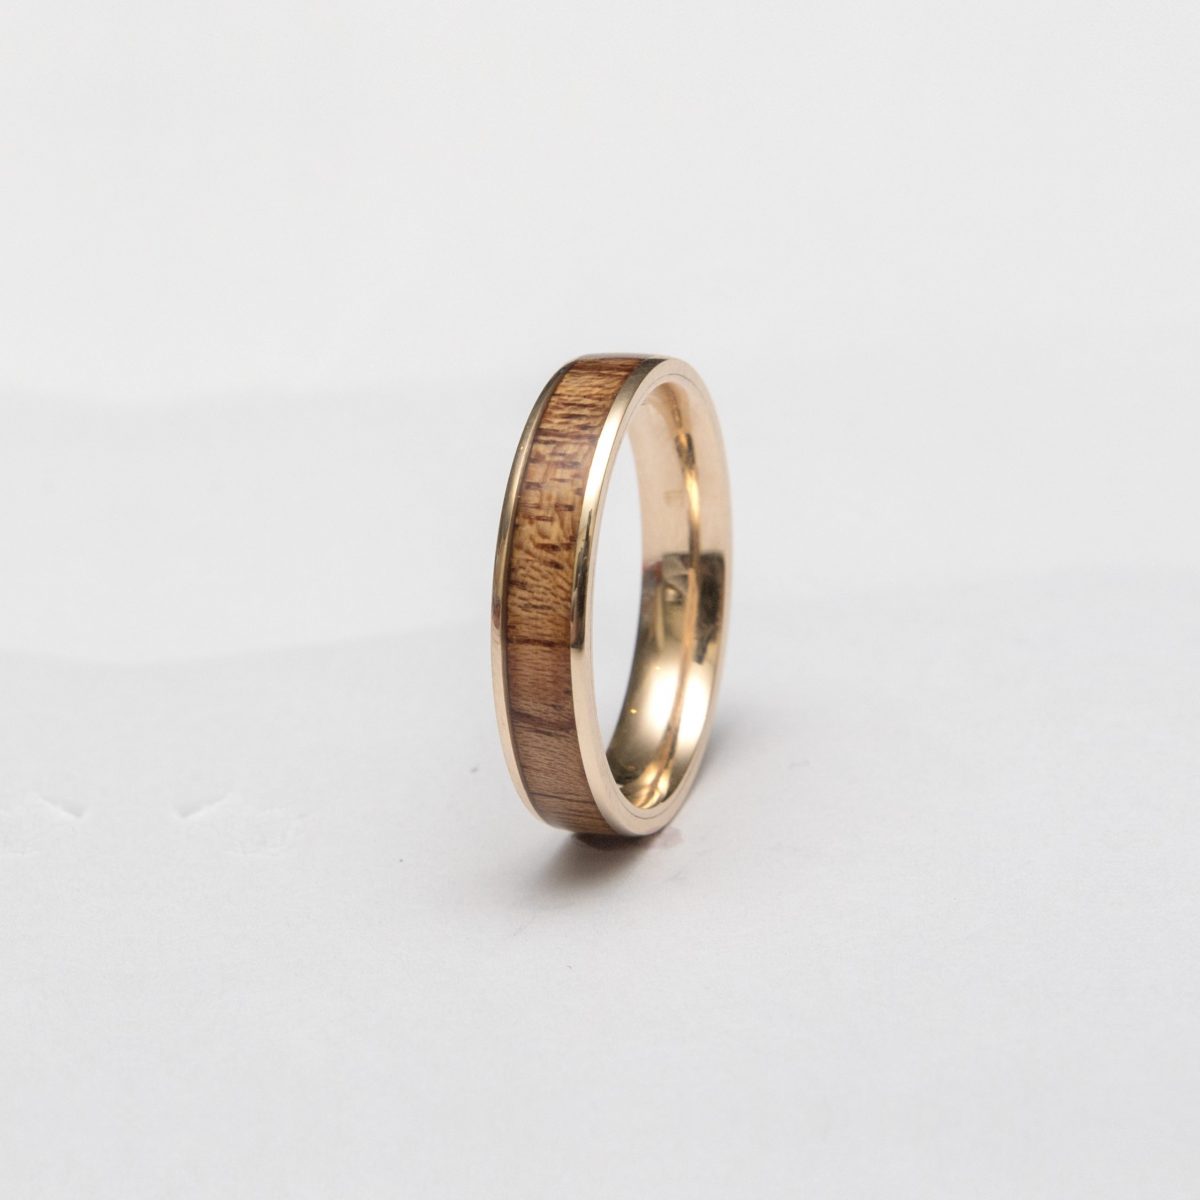 Wooden Ring Gold Mahogany